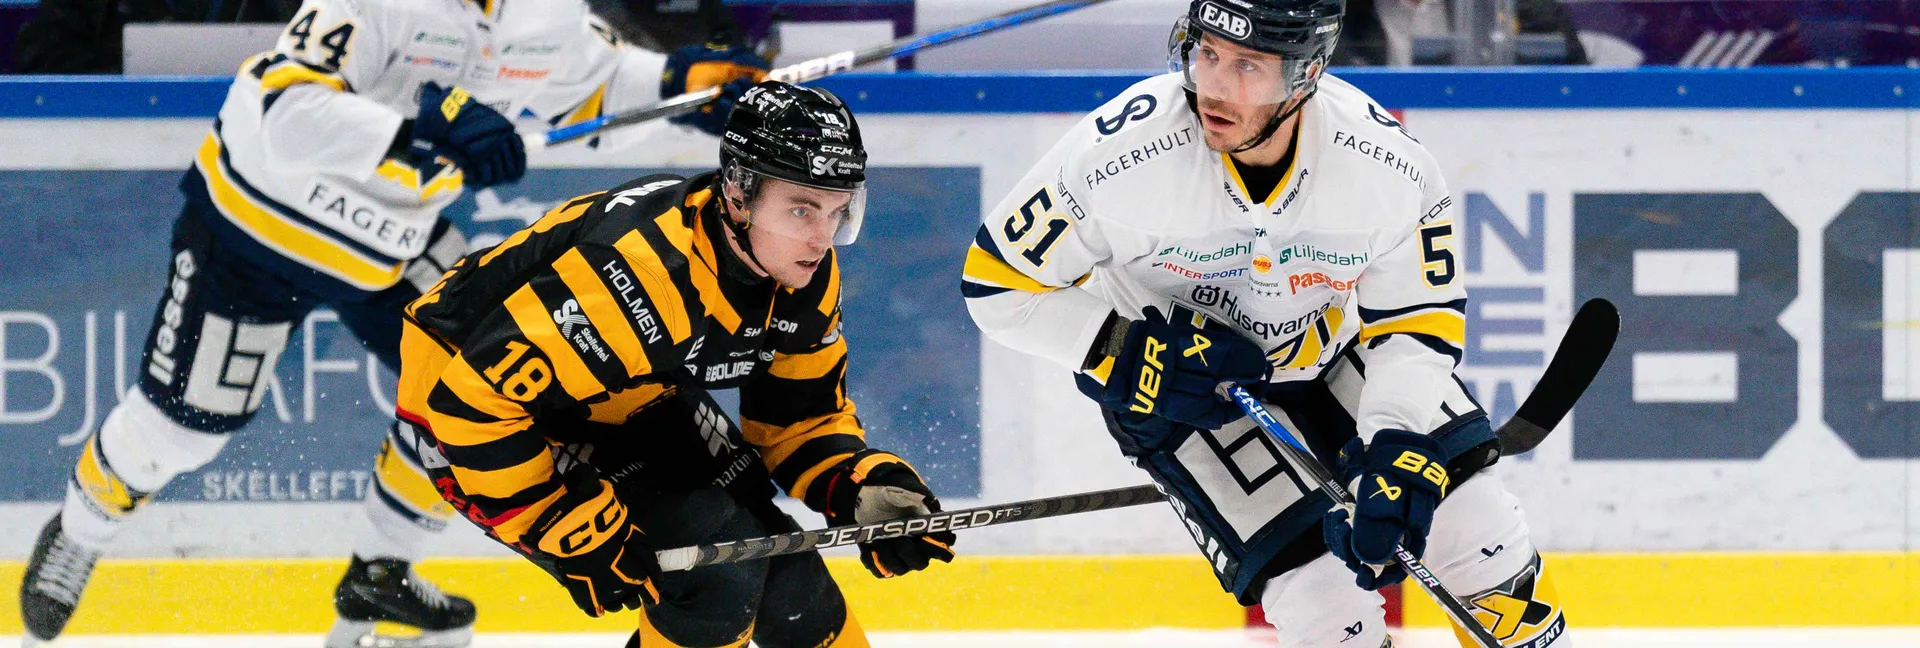 Ishockeymatch mellan HV71 och Skellefteå i SHL